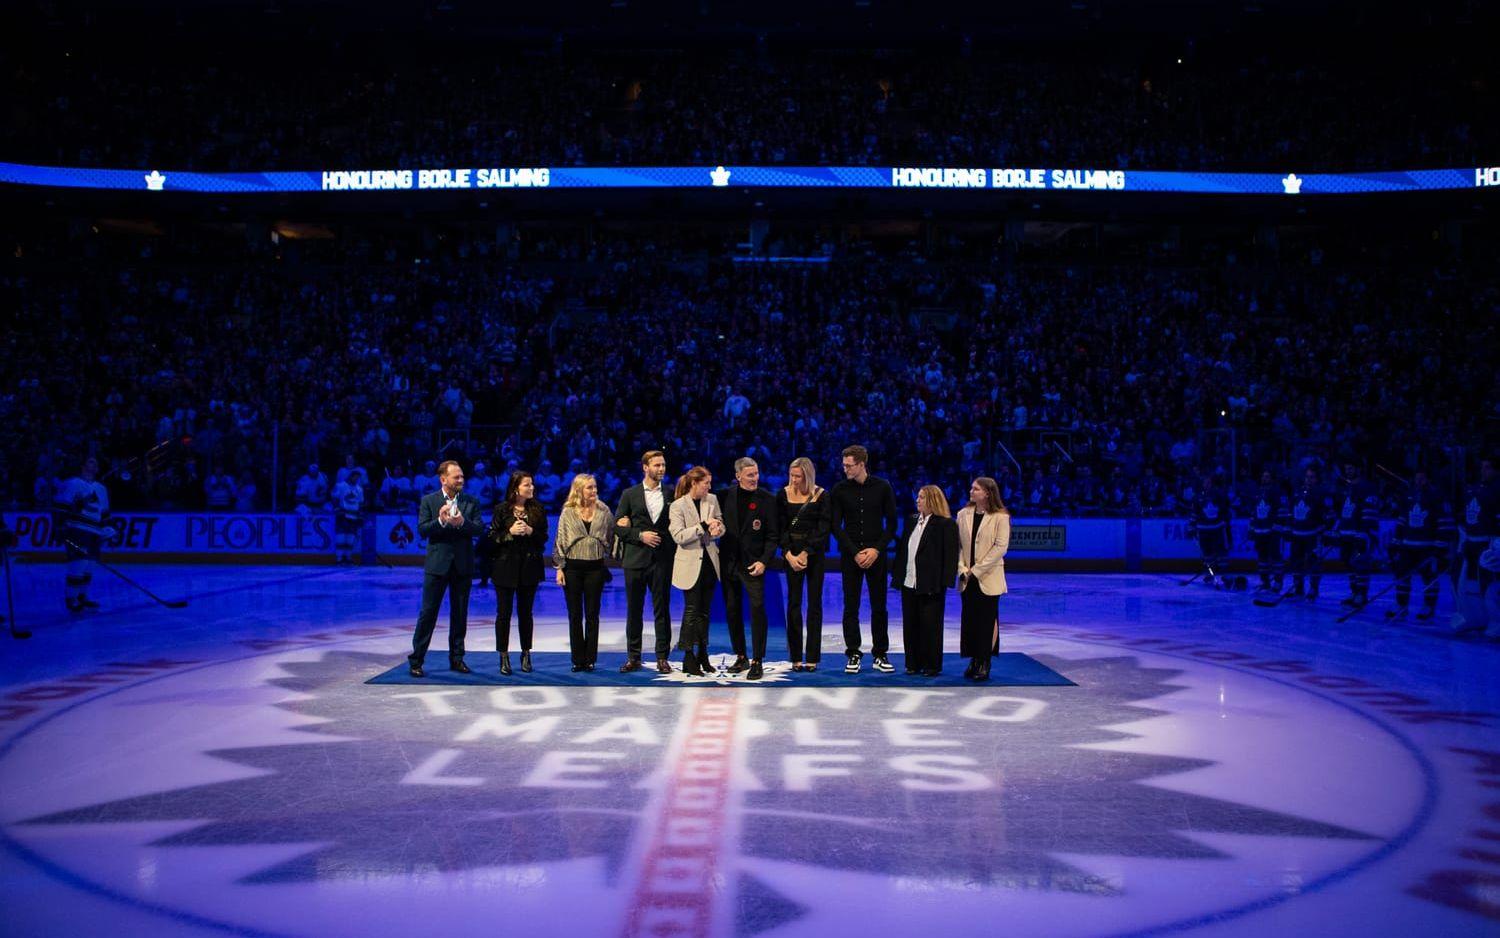 12:e och 13:e november hyllades Börje Salming i samband med Toronto Maple Leafs hemmamatcher. Här hyllas han inför mötet med Vancouver Canucks. 